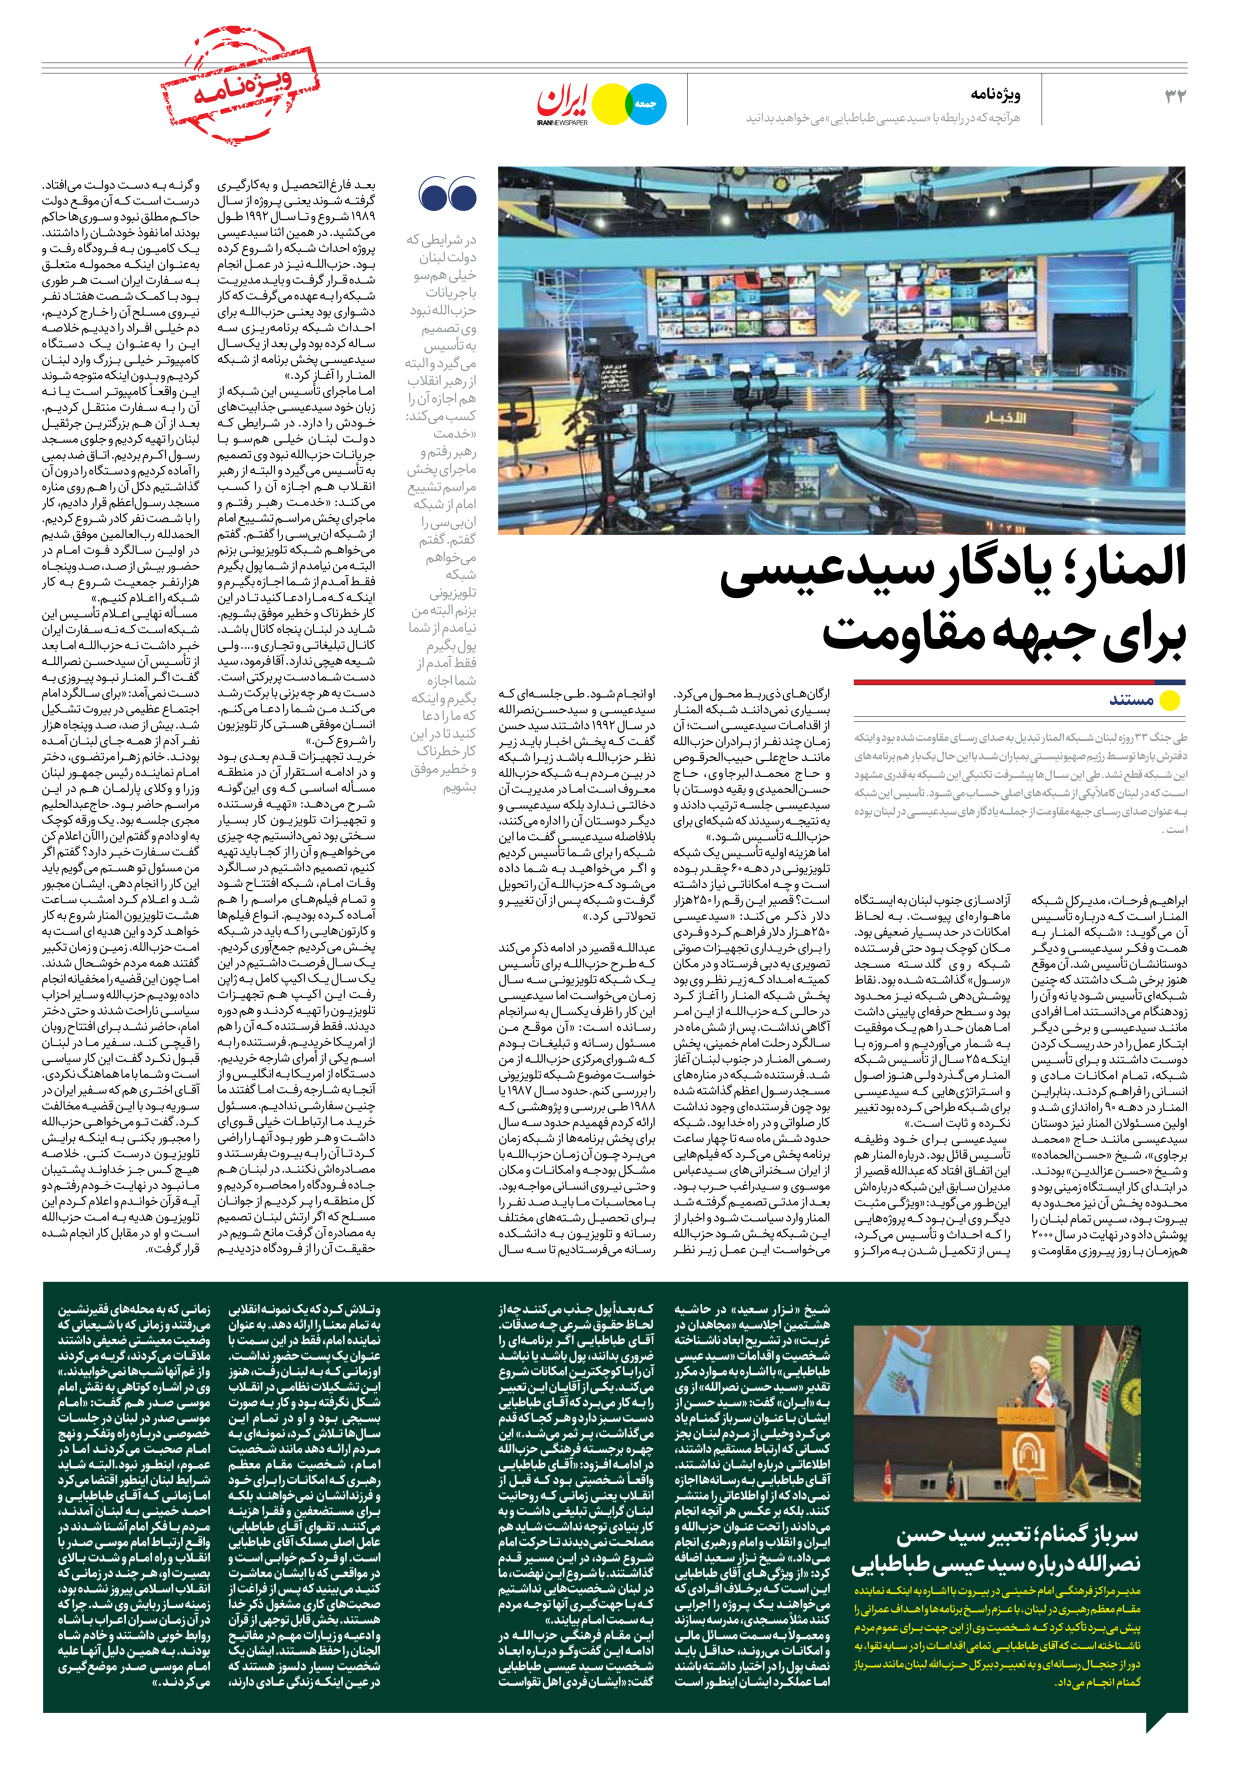 روزنامه ایران - ویژه نامه جمعه ۴۱ - ۳۰ شهریور ۱۴۰۲ - صفحه ۳۲